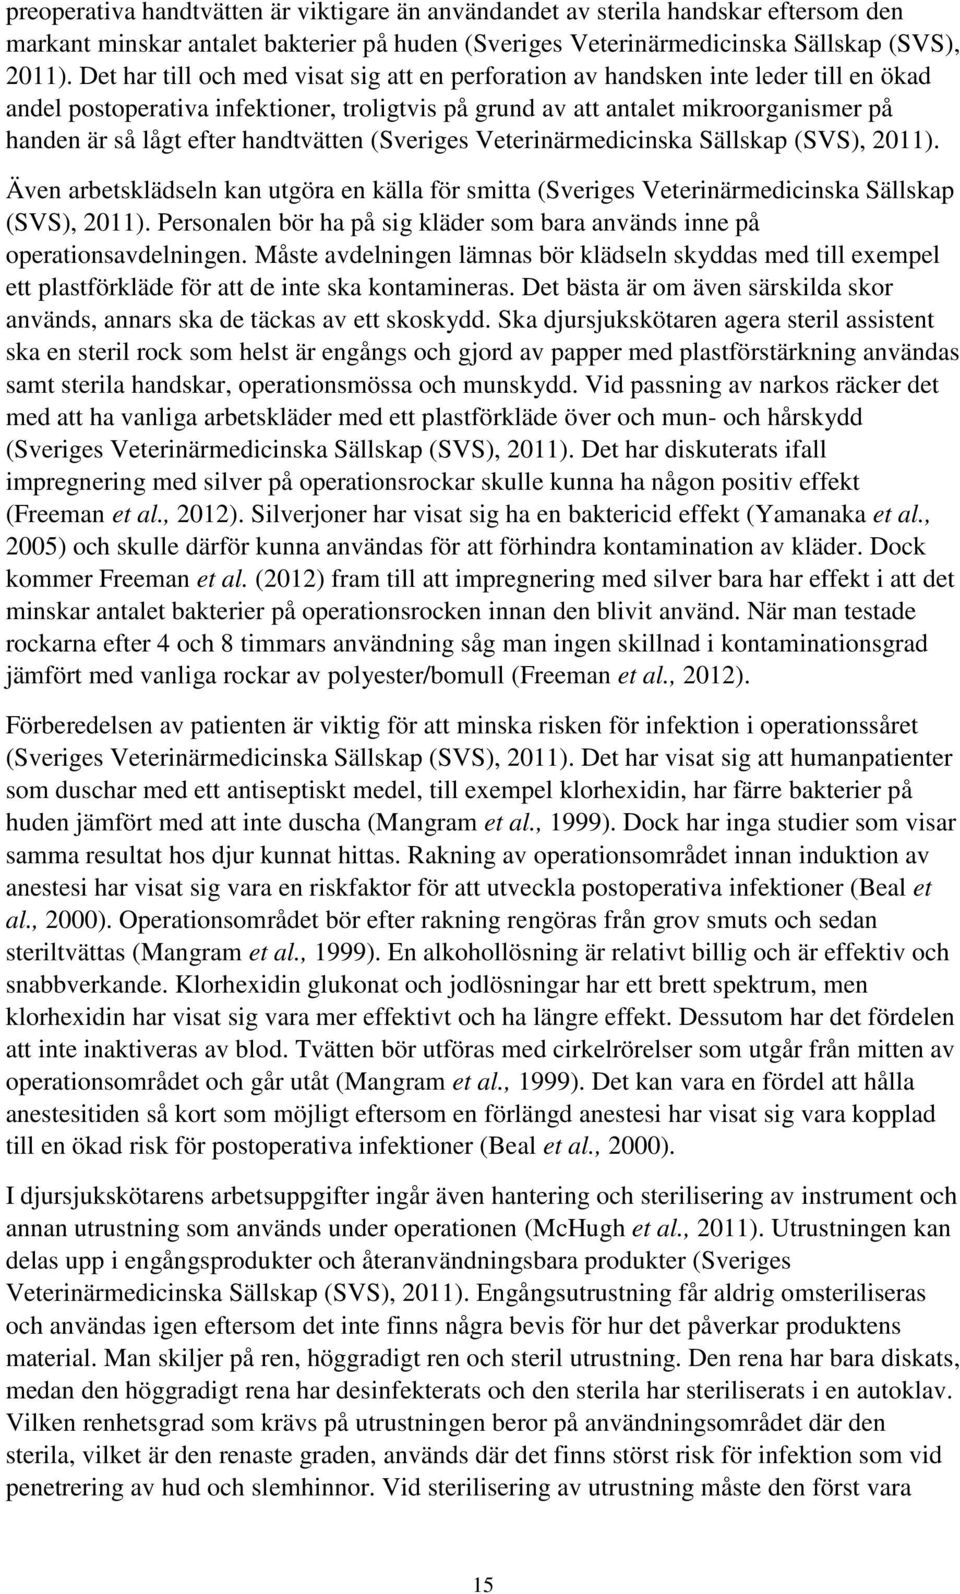 handtvätten (Sveriges Veterinärmedicinska Sällskap (SVS), 2011). Även arbetsklädseln kan utgöra en källa för smitta (Sveriges Veterinärmedicinska Sällskap (SVS), 2011).